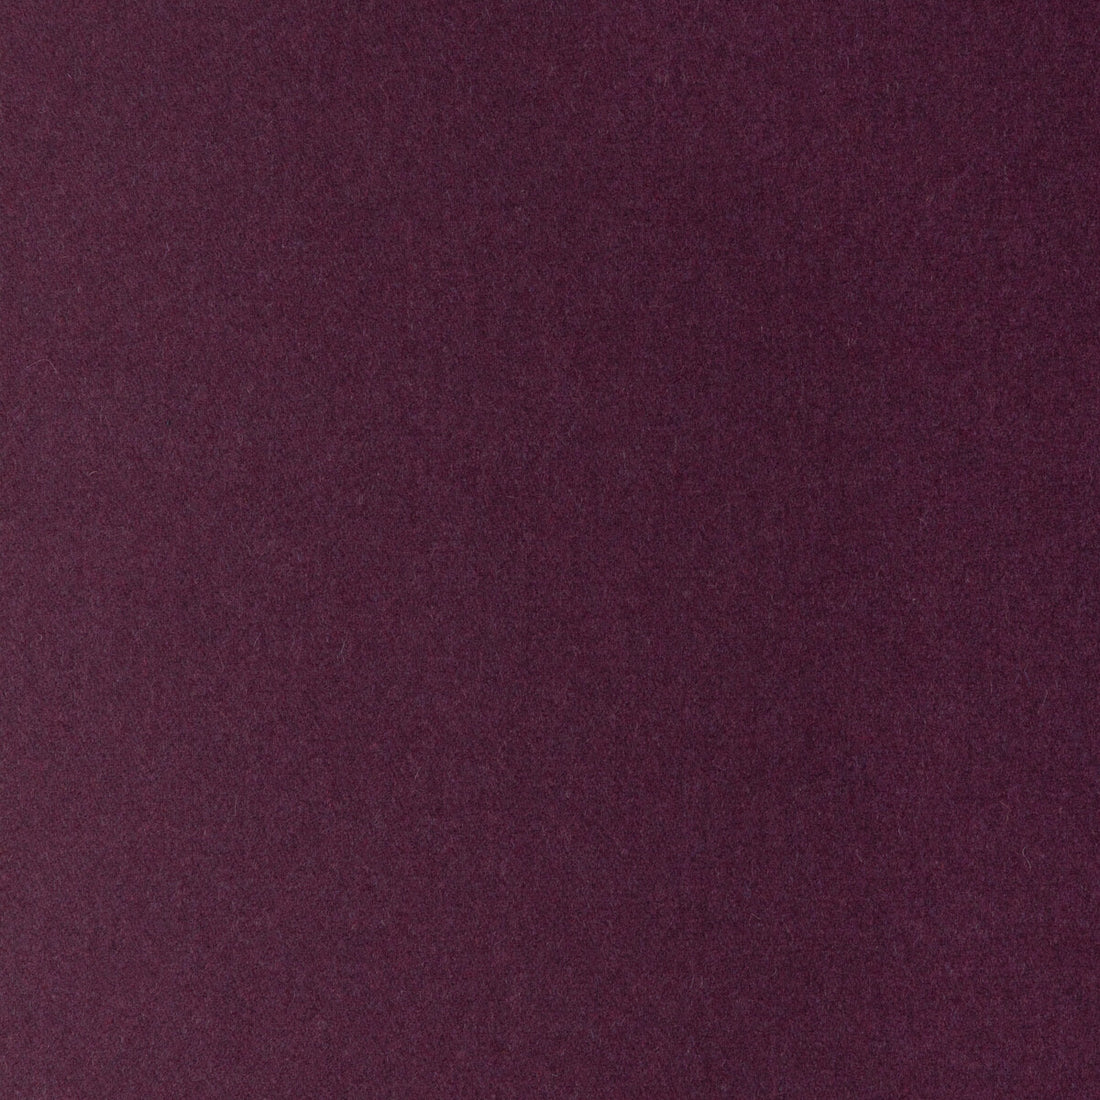 Skye Wool fabric in aubergine color - pattern 2017118.1010.0 - by Lee Jofa